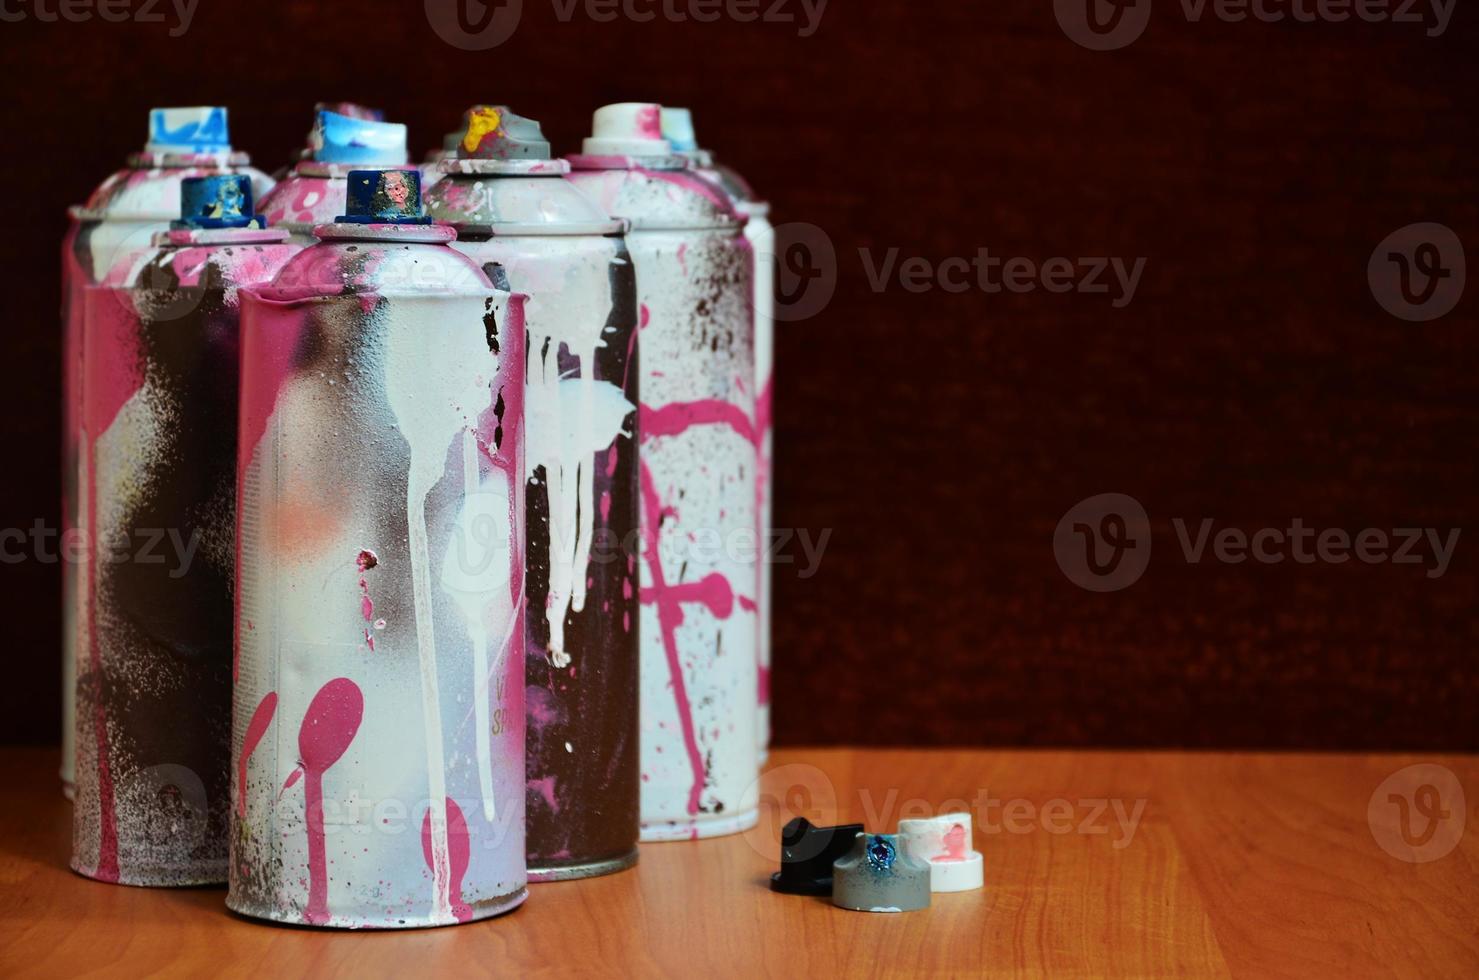 Stillleben mit einer großen Anzahl gebrauchter bunter Spraydosen mit Aerosolfarbe, die auf der behandelten Holzoberfläche in der Graffiti-Werkstatt des Künstlers liegen. schmutzige und befleckte Dosen für Sprühkunst foto